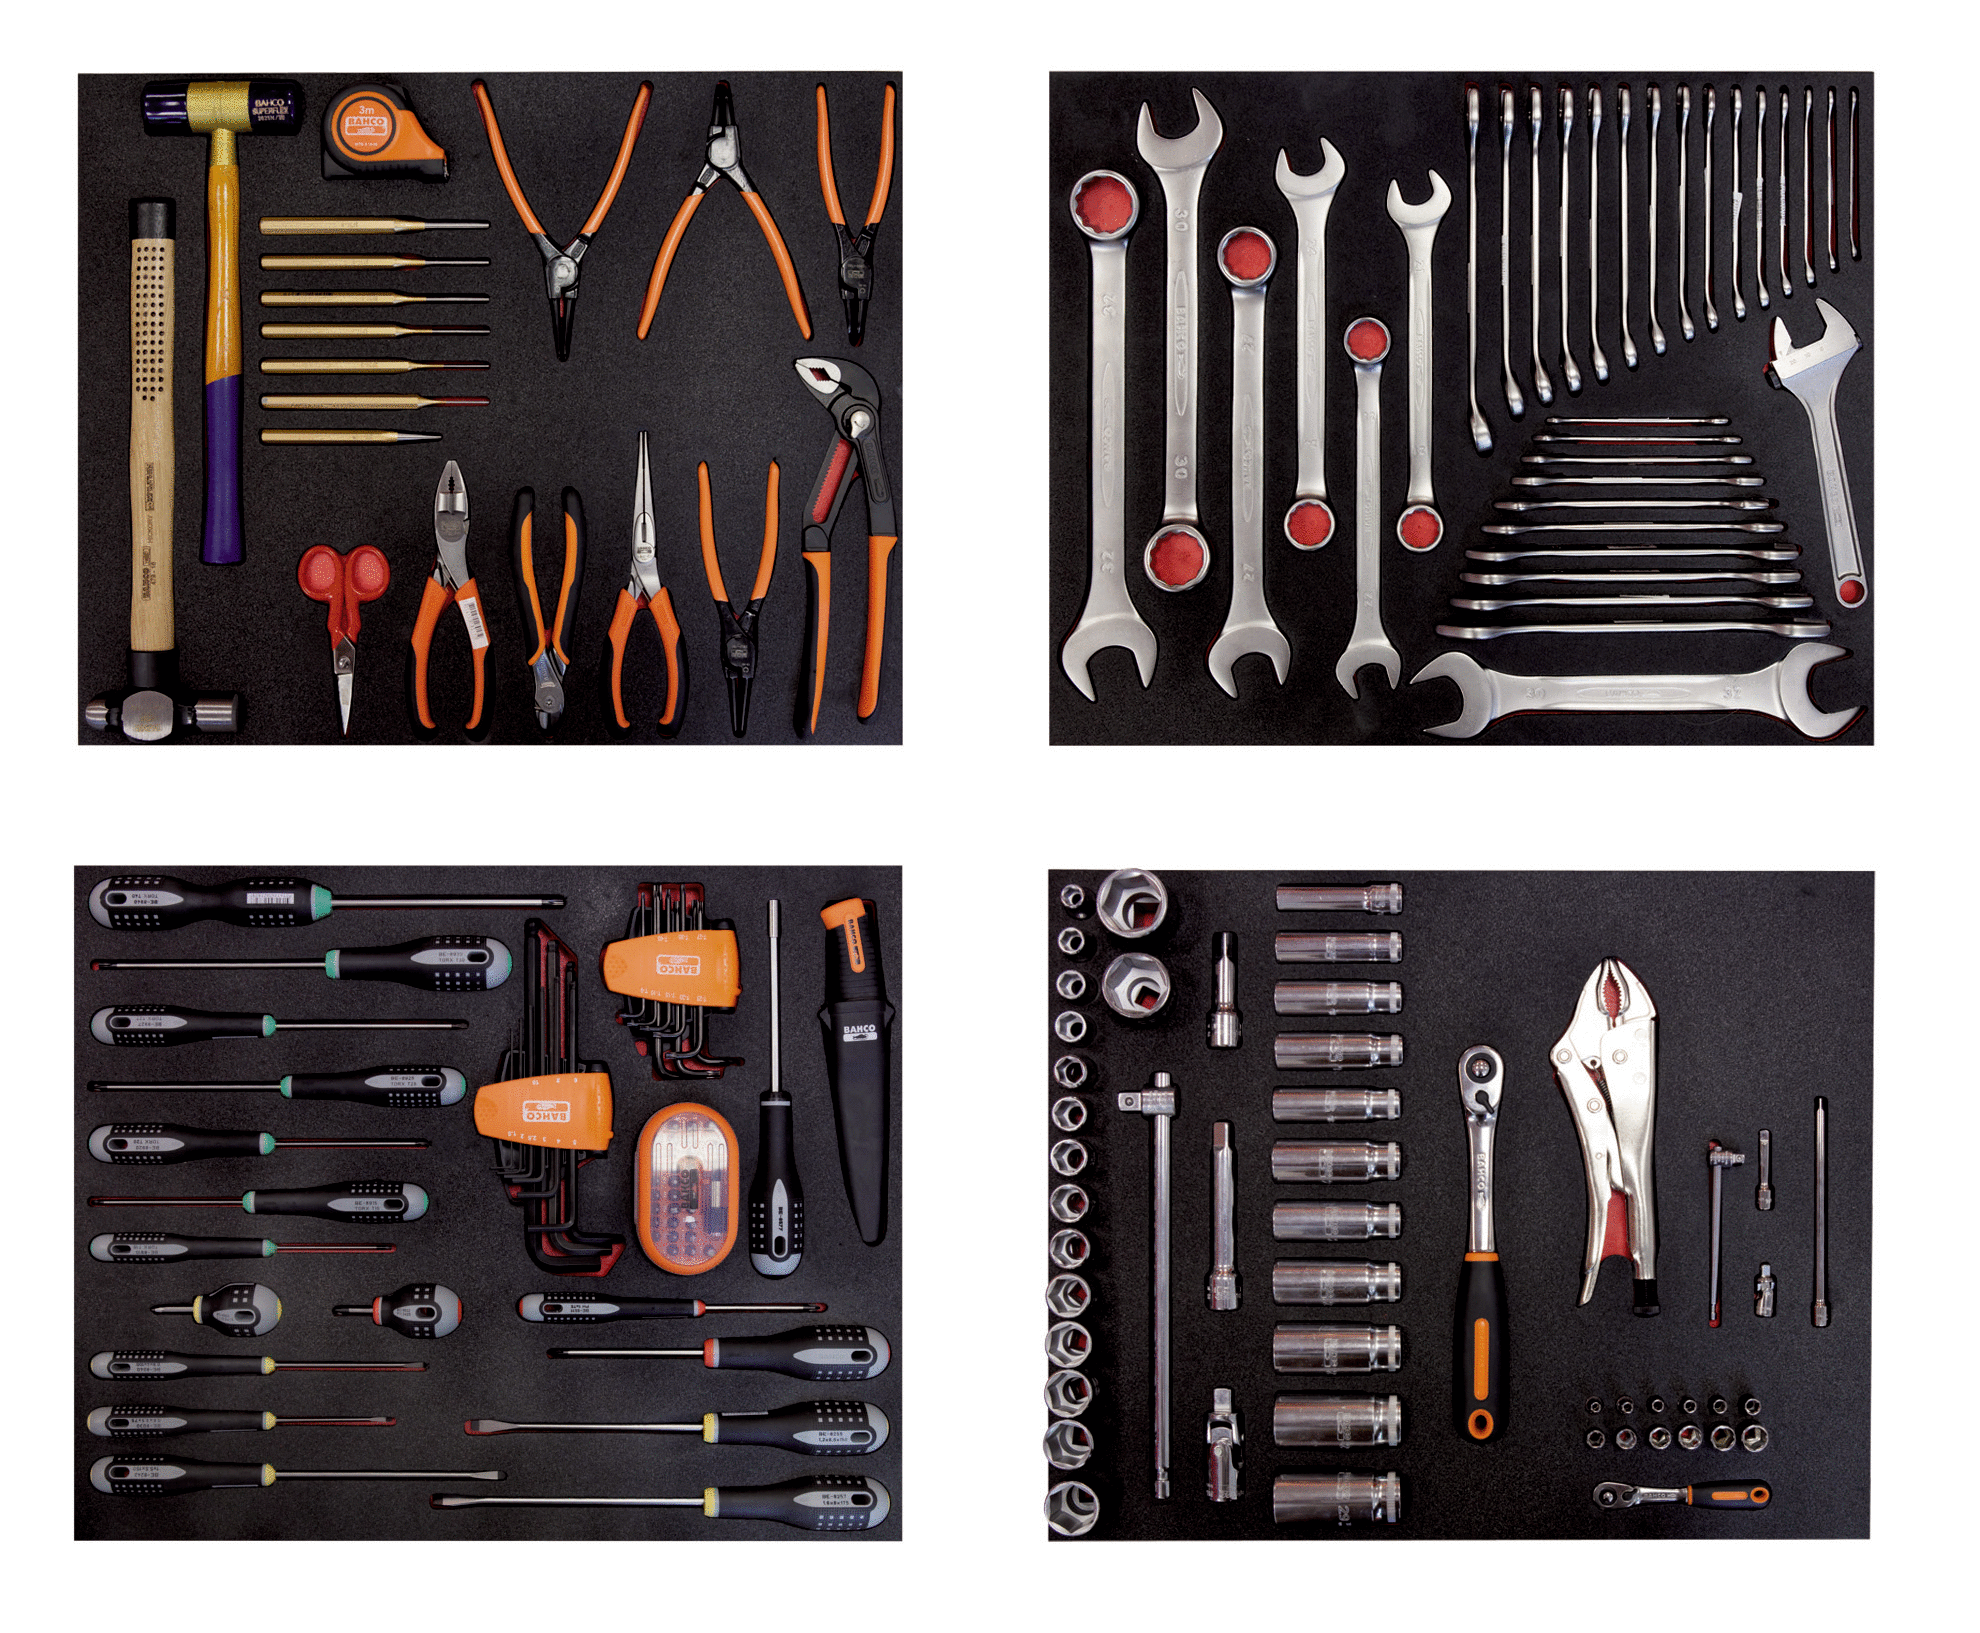 Composición en 4 foams de herramientas para automoción (168 piezas) | BAHCO | España